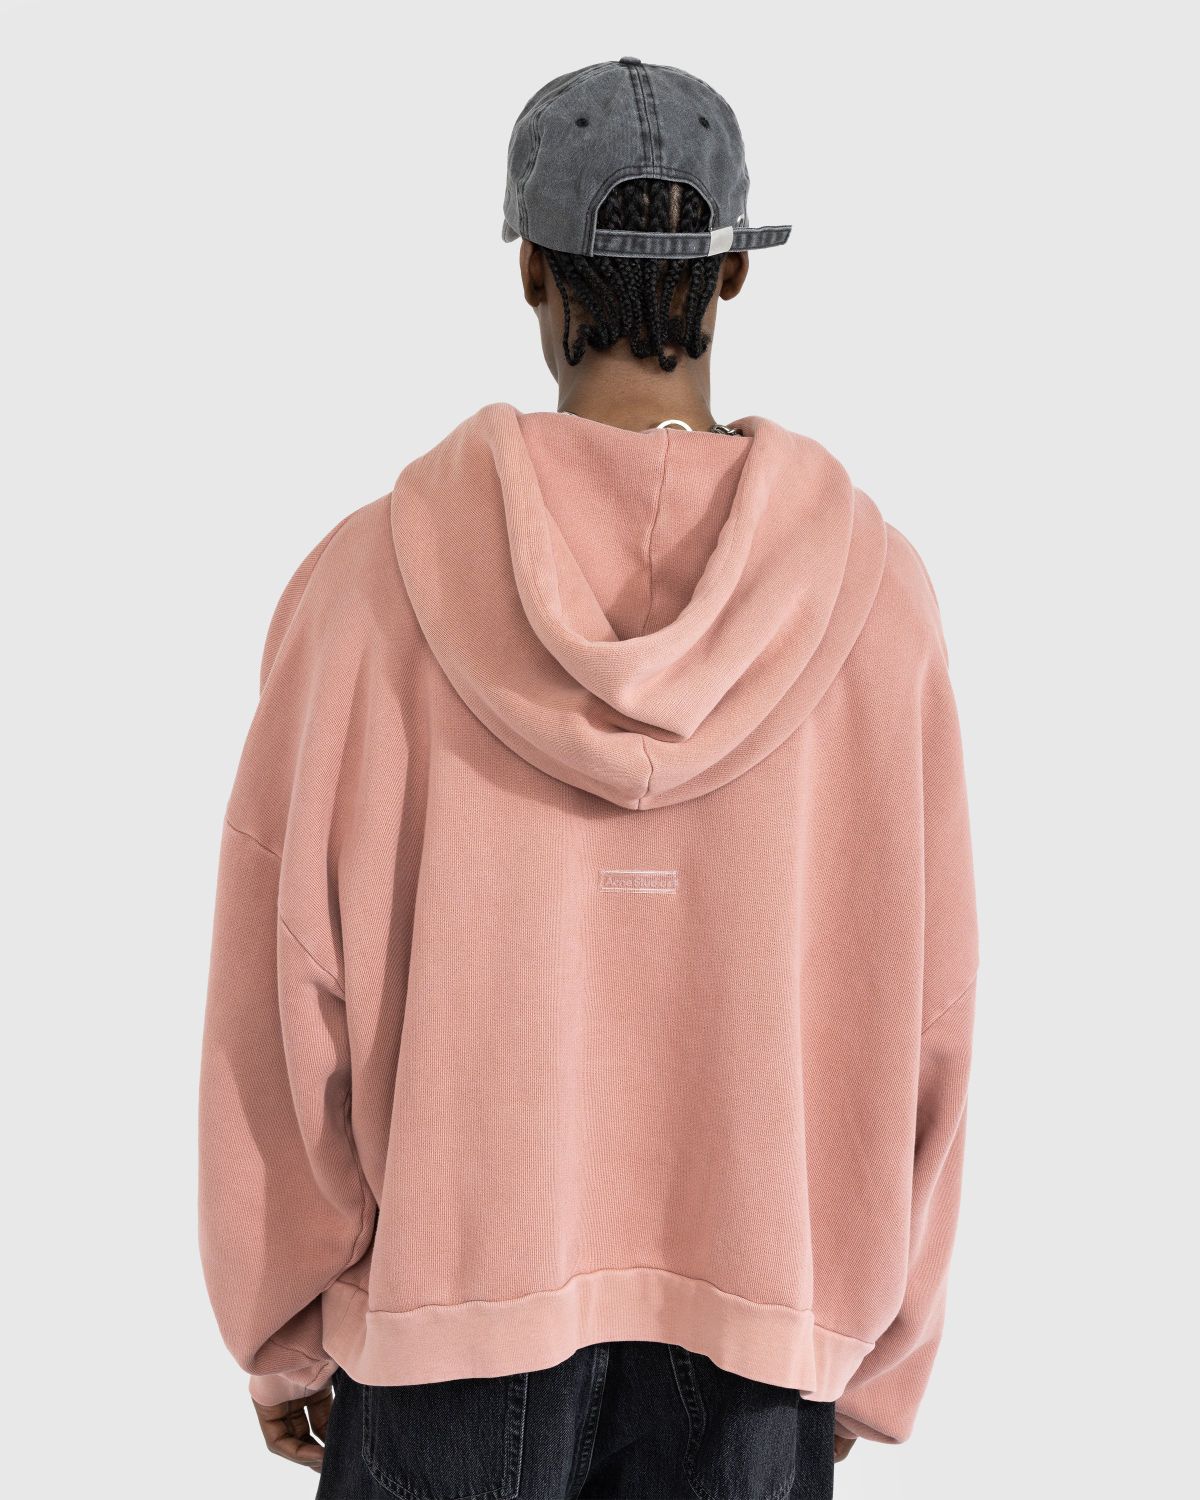 Acne Studios – Hooded Sweatshirt Vintage Pink - Hoodies - Pink - Image 3